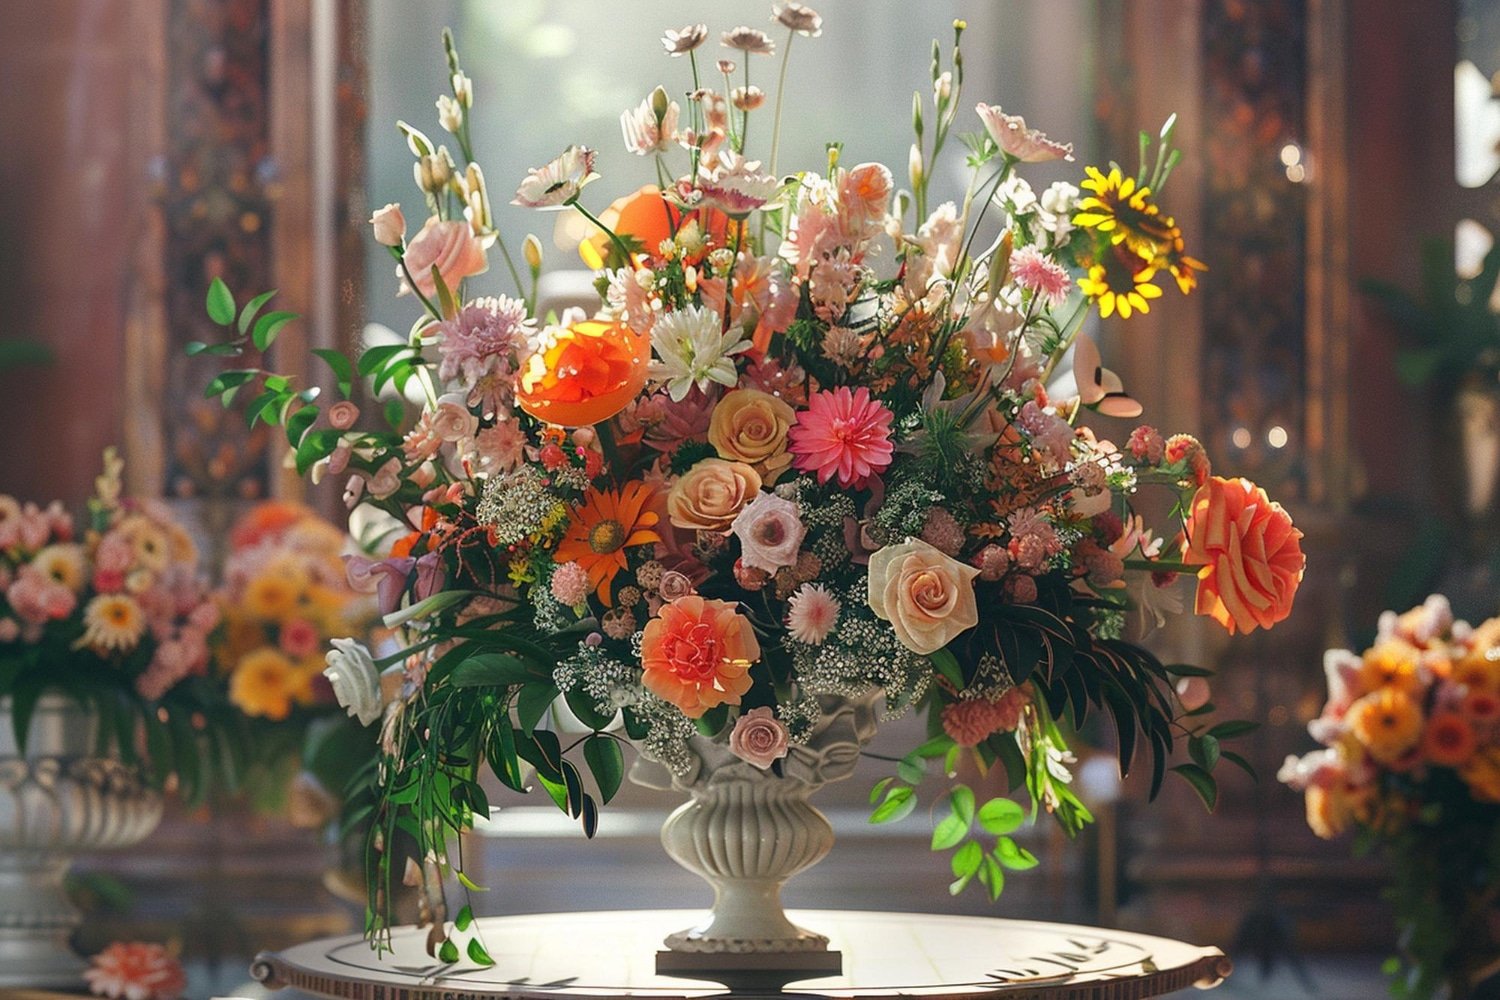 Haute Florist Artistic Floral Arrangements Delivered